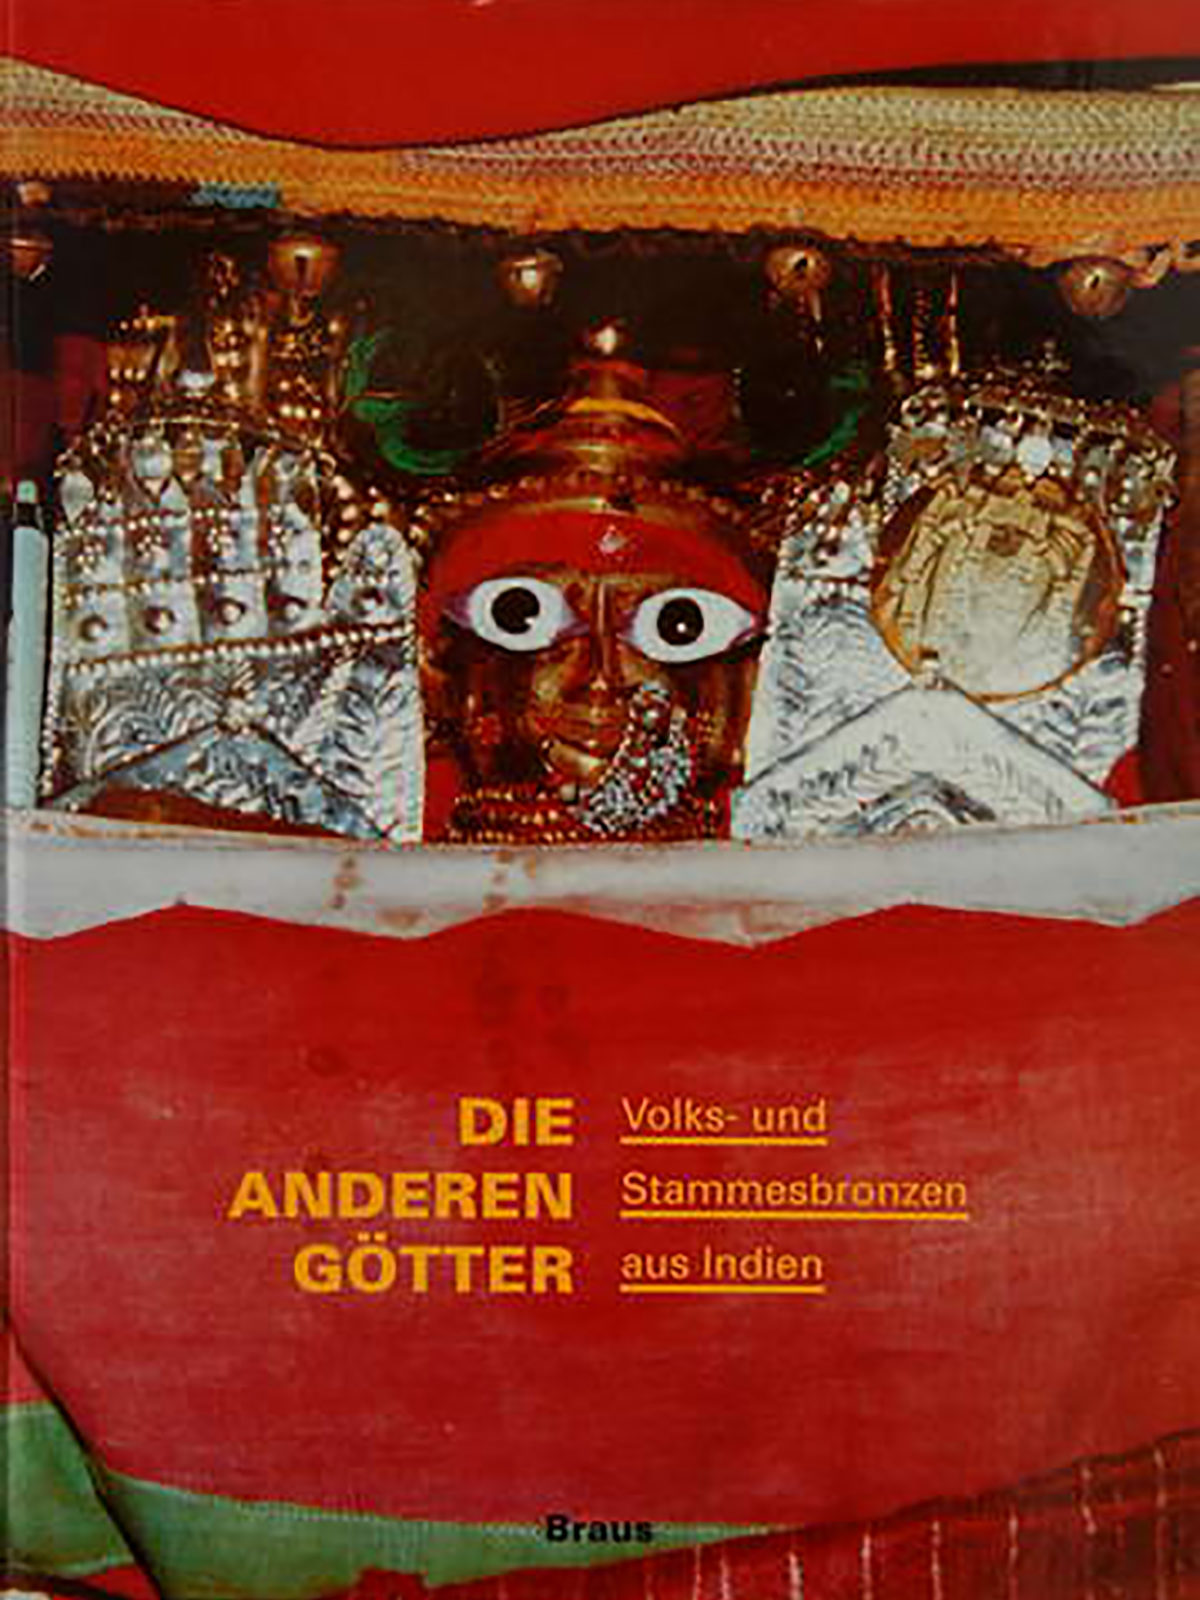 Publikation: Die anderen Götter - Volks- und Stammesbronzen aus Indien, 1992